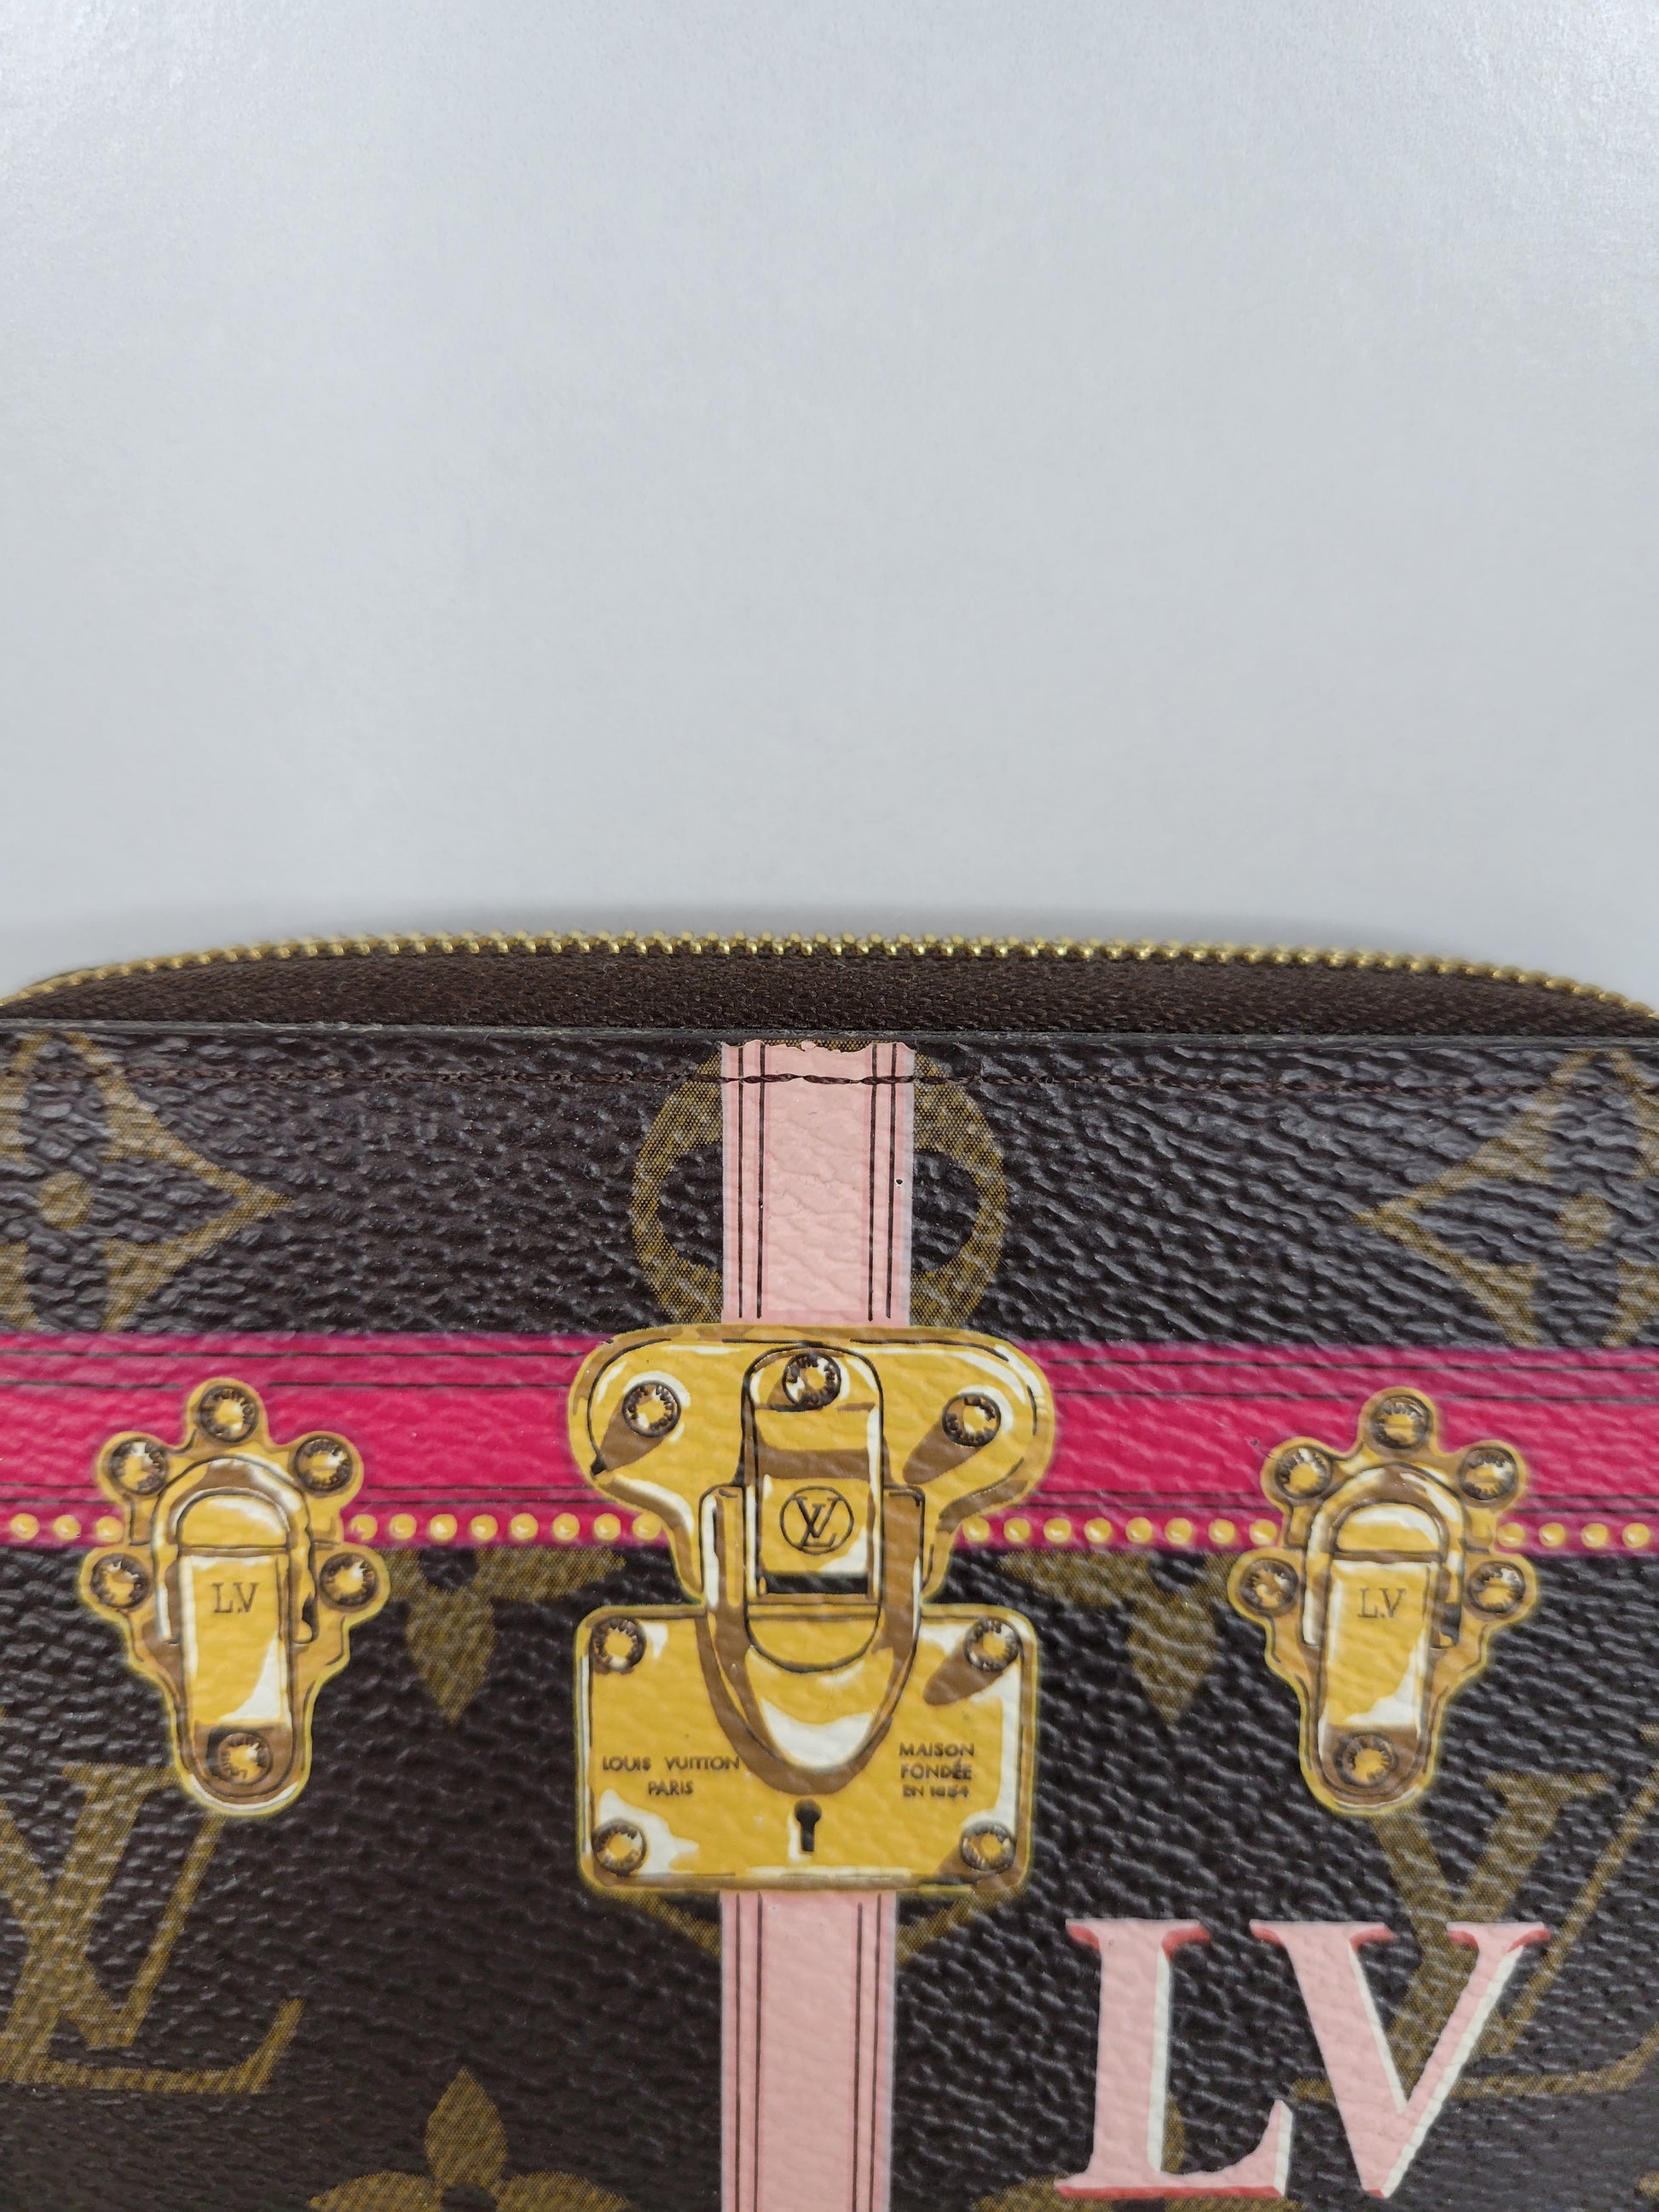 Authentic LOUIS VUITTON Monogram (trunk) Zippy coin purse M62617 coin case  #